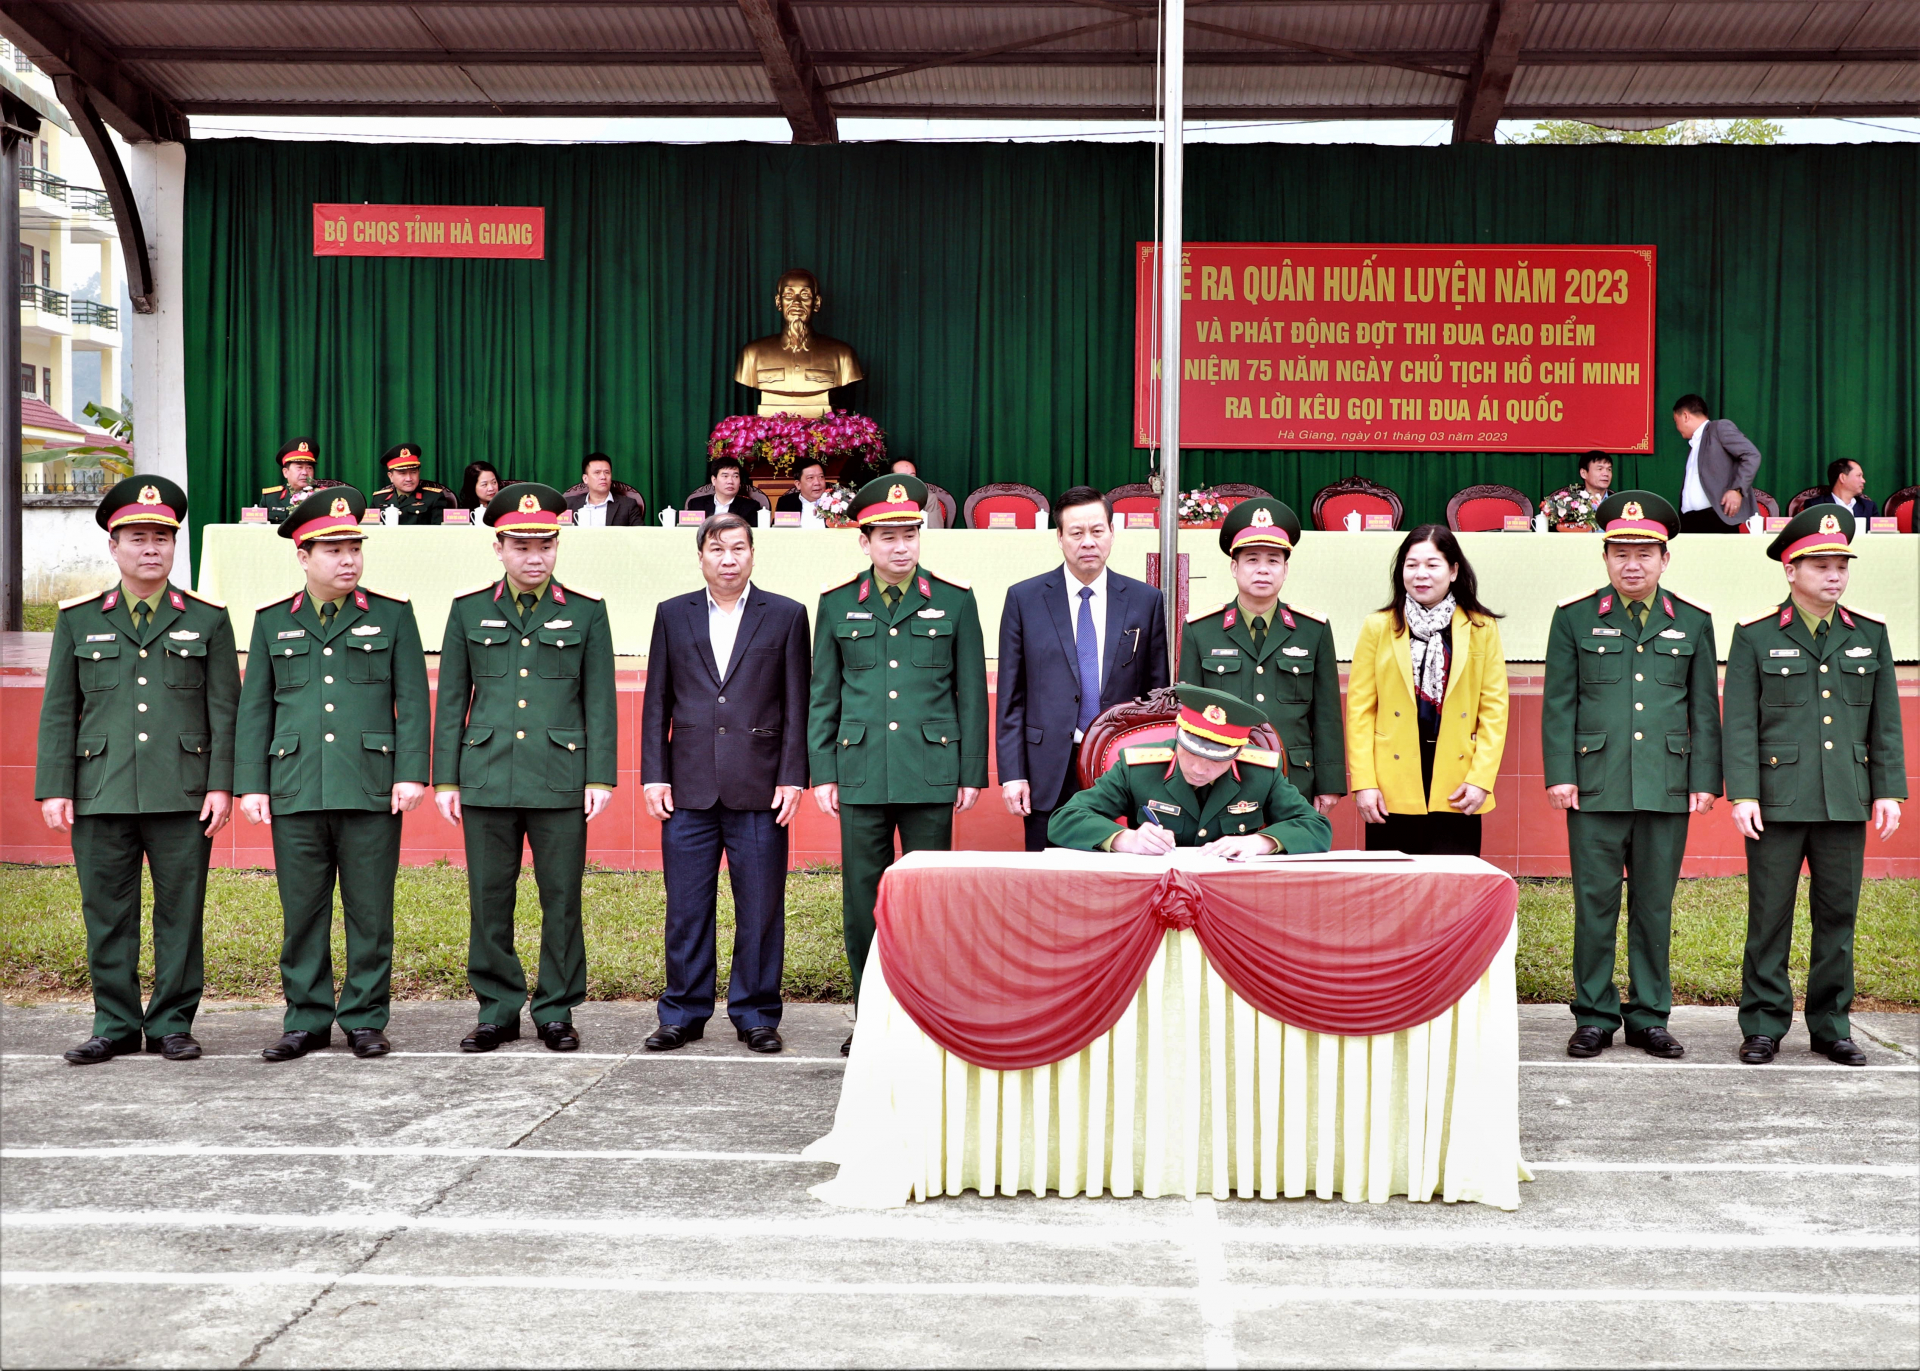 Phó Bí thư Tỉnh ủy, Chủ tịch UBND tỉnh Nguyễn Văn Sơn và các đại biểu chứng kiến các đơn vị của Bộ CHQS tỉnh ký cam kết thi đua tại buổi lễ.